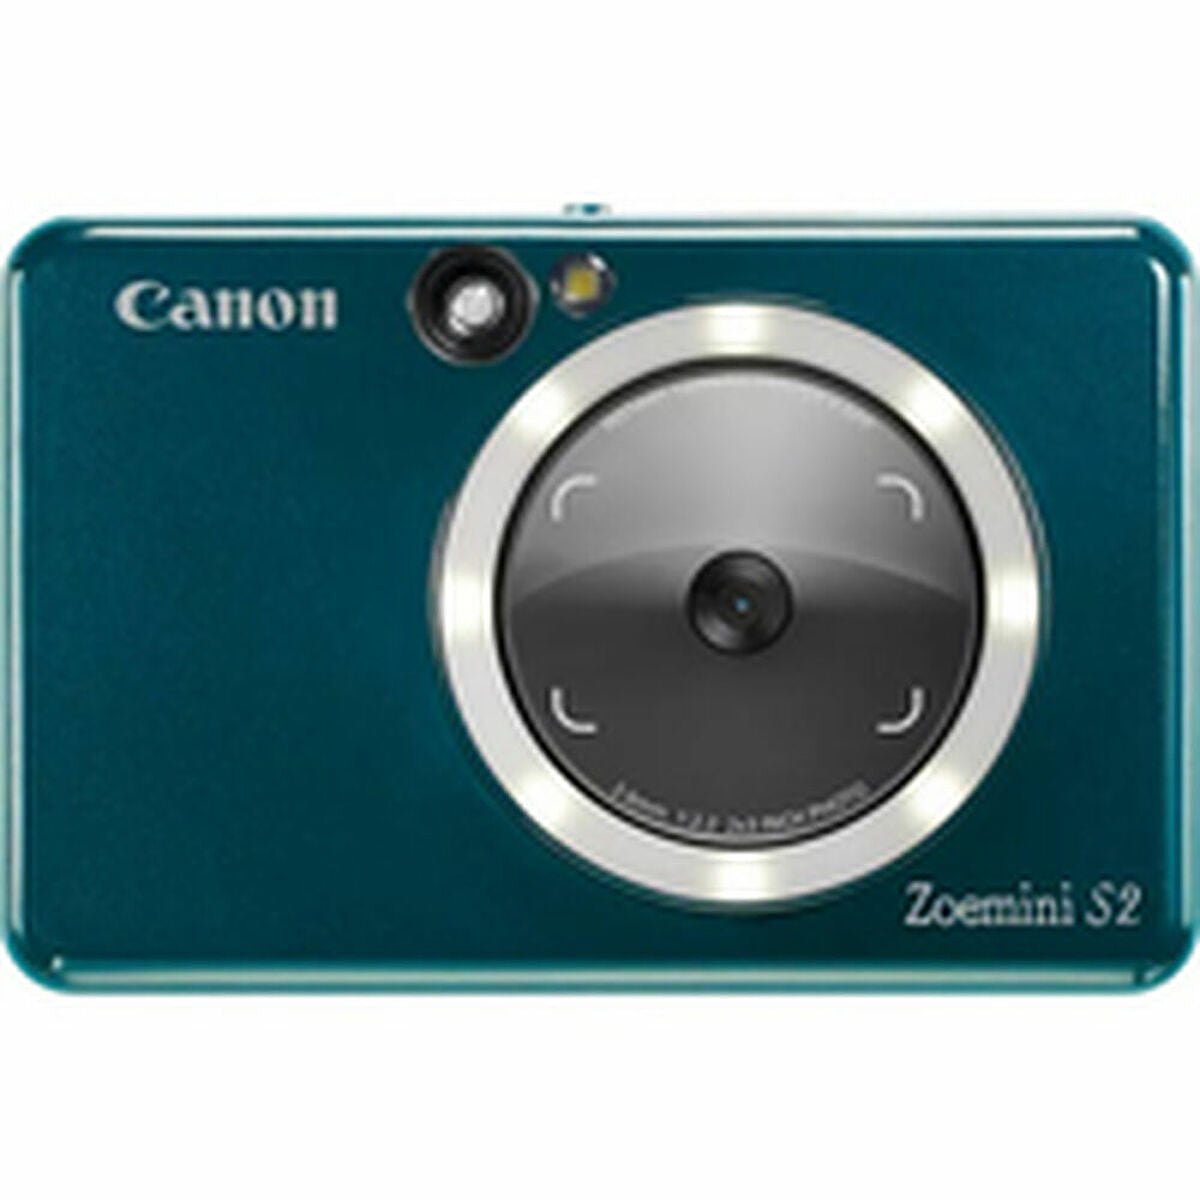 Instant Fotocamera Canon Zoemini S2 Blauw